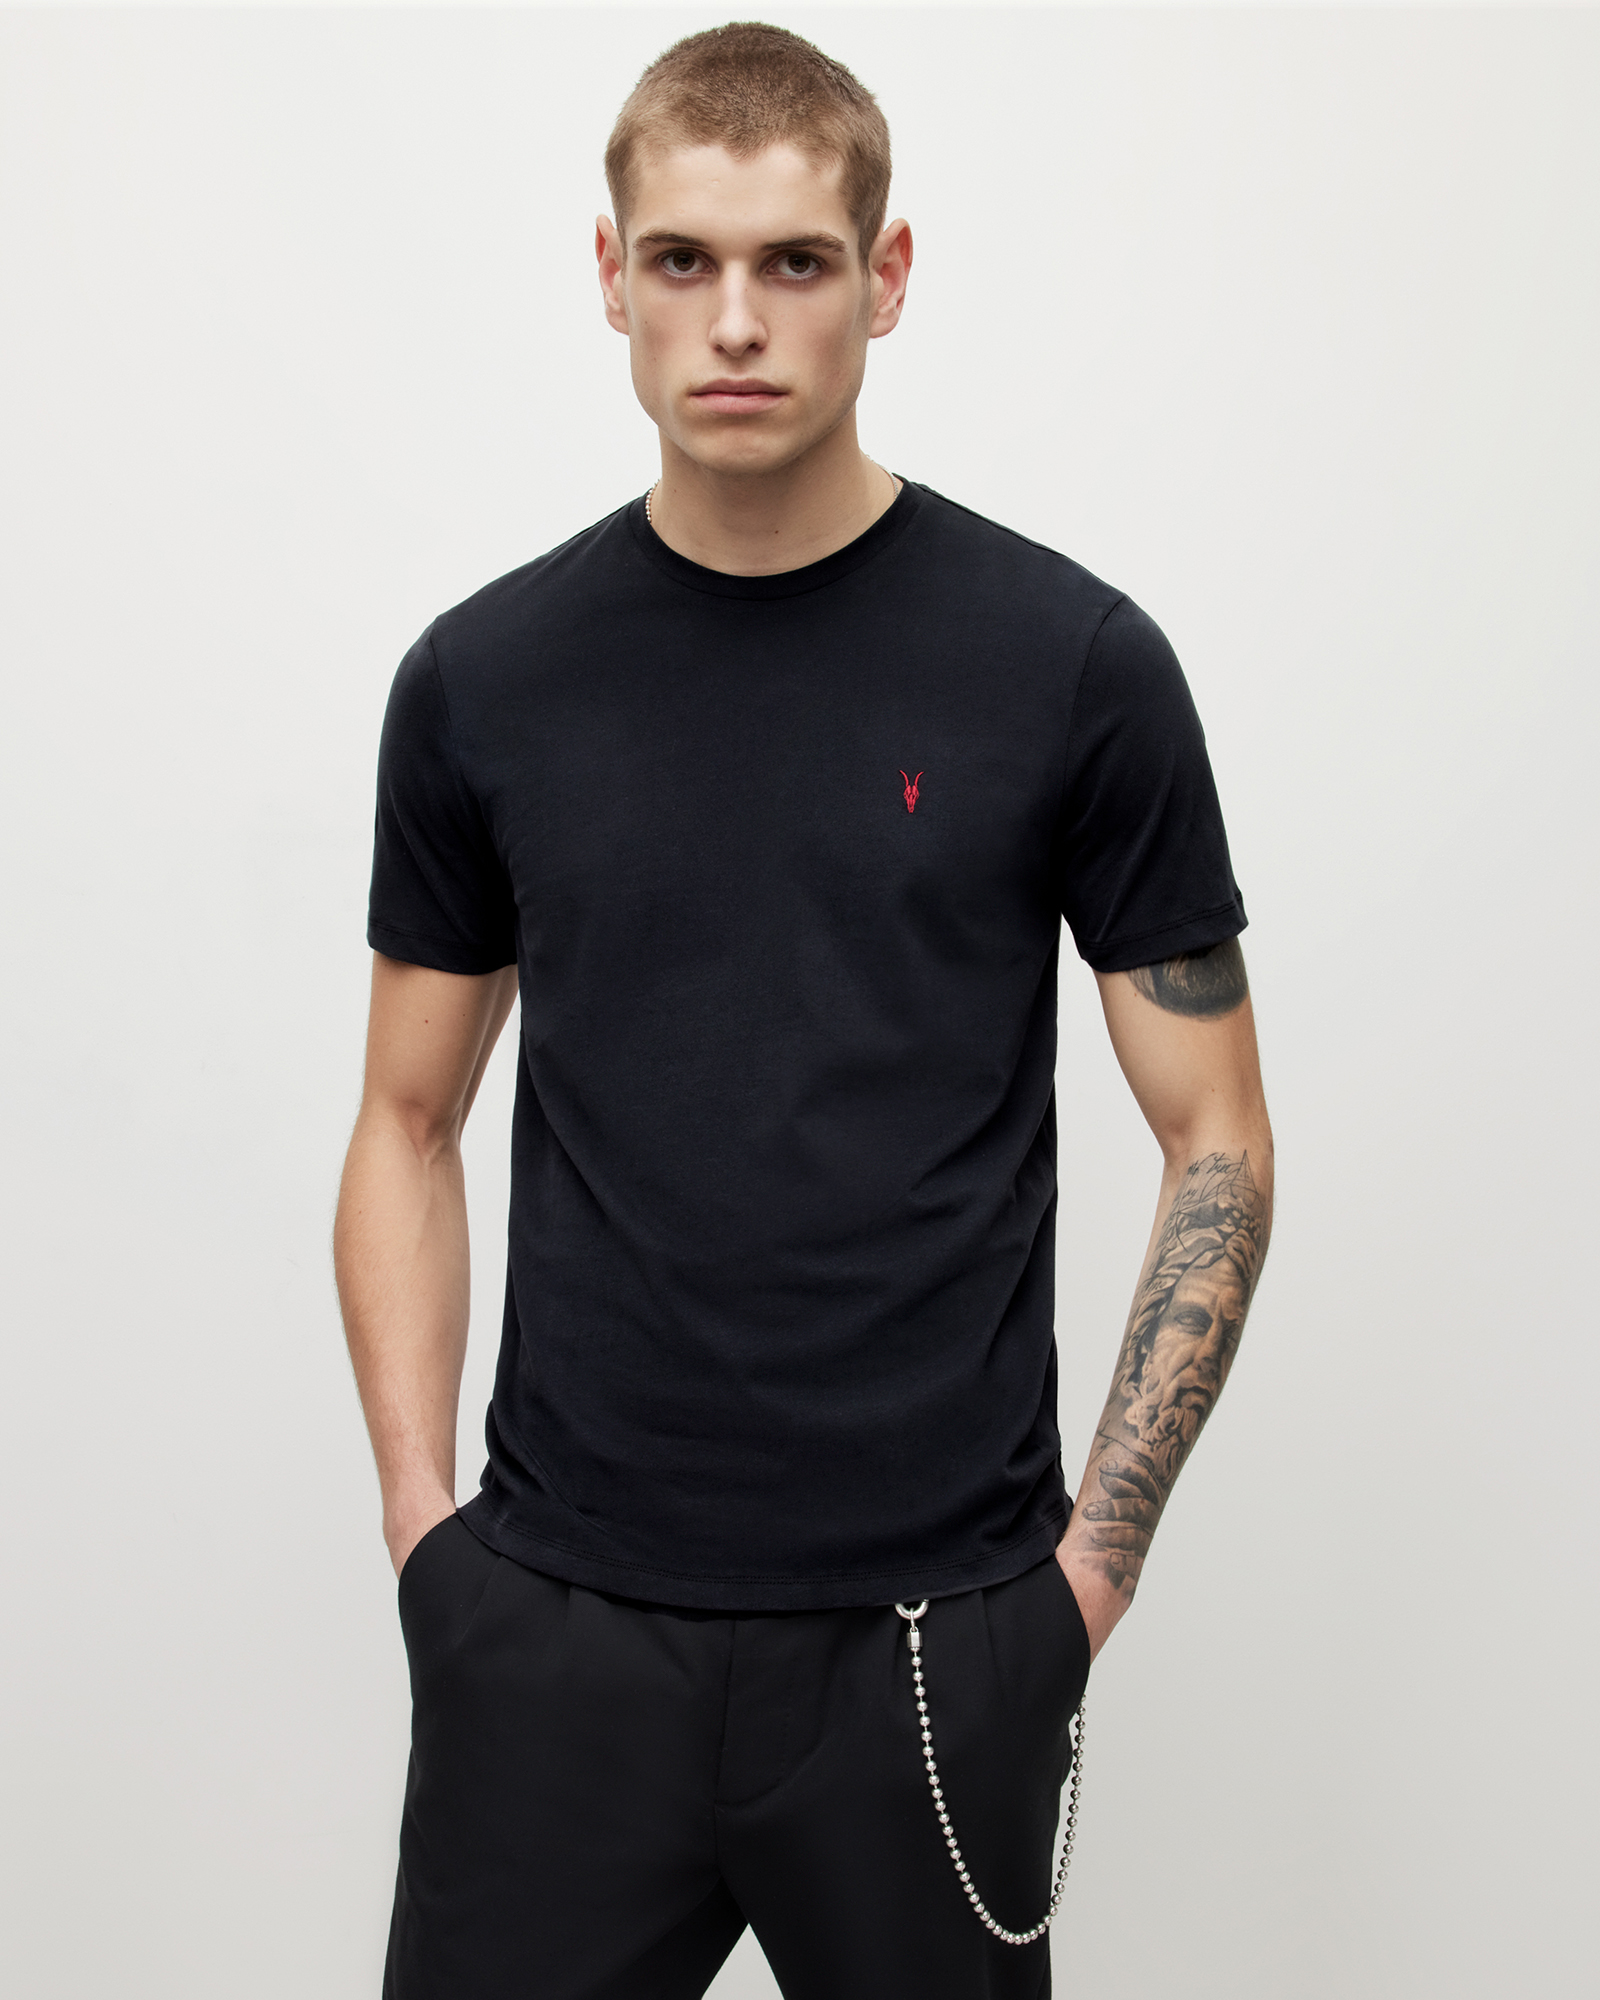 AllSaints Men's Brace Contrast Crew T-Shirt, Washed Black